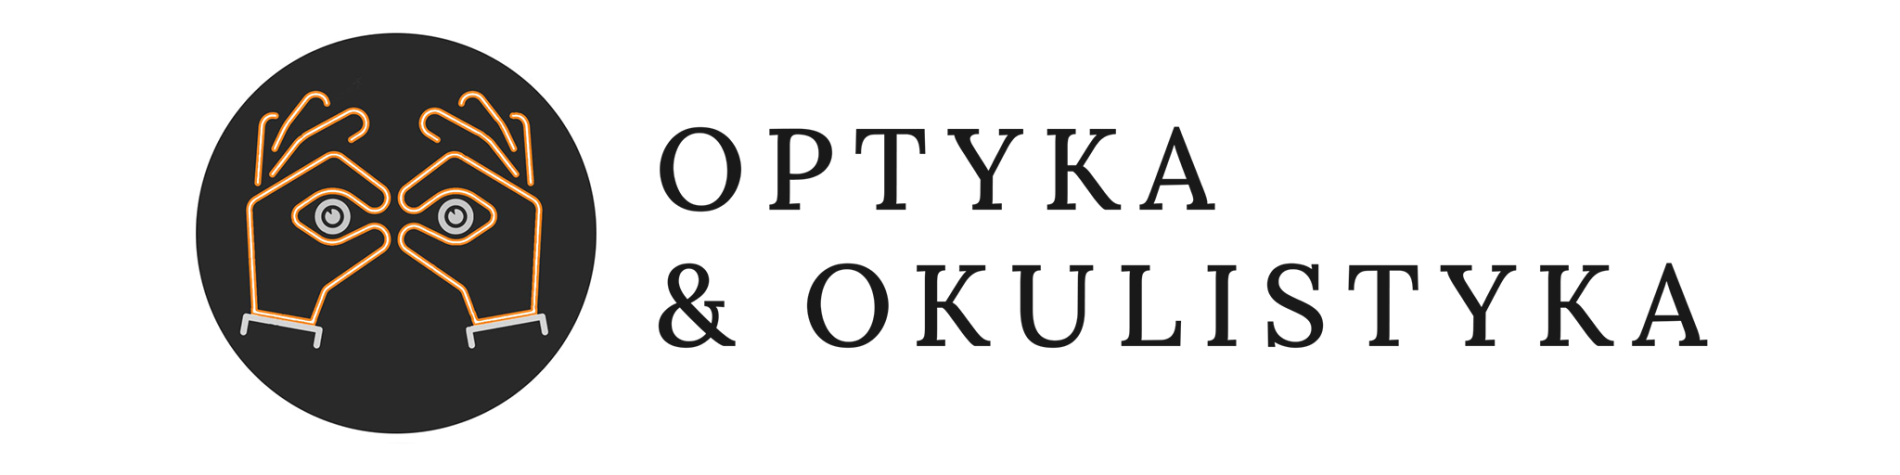 Okulista Białystok, salon optyczny Białystok